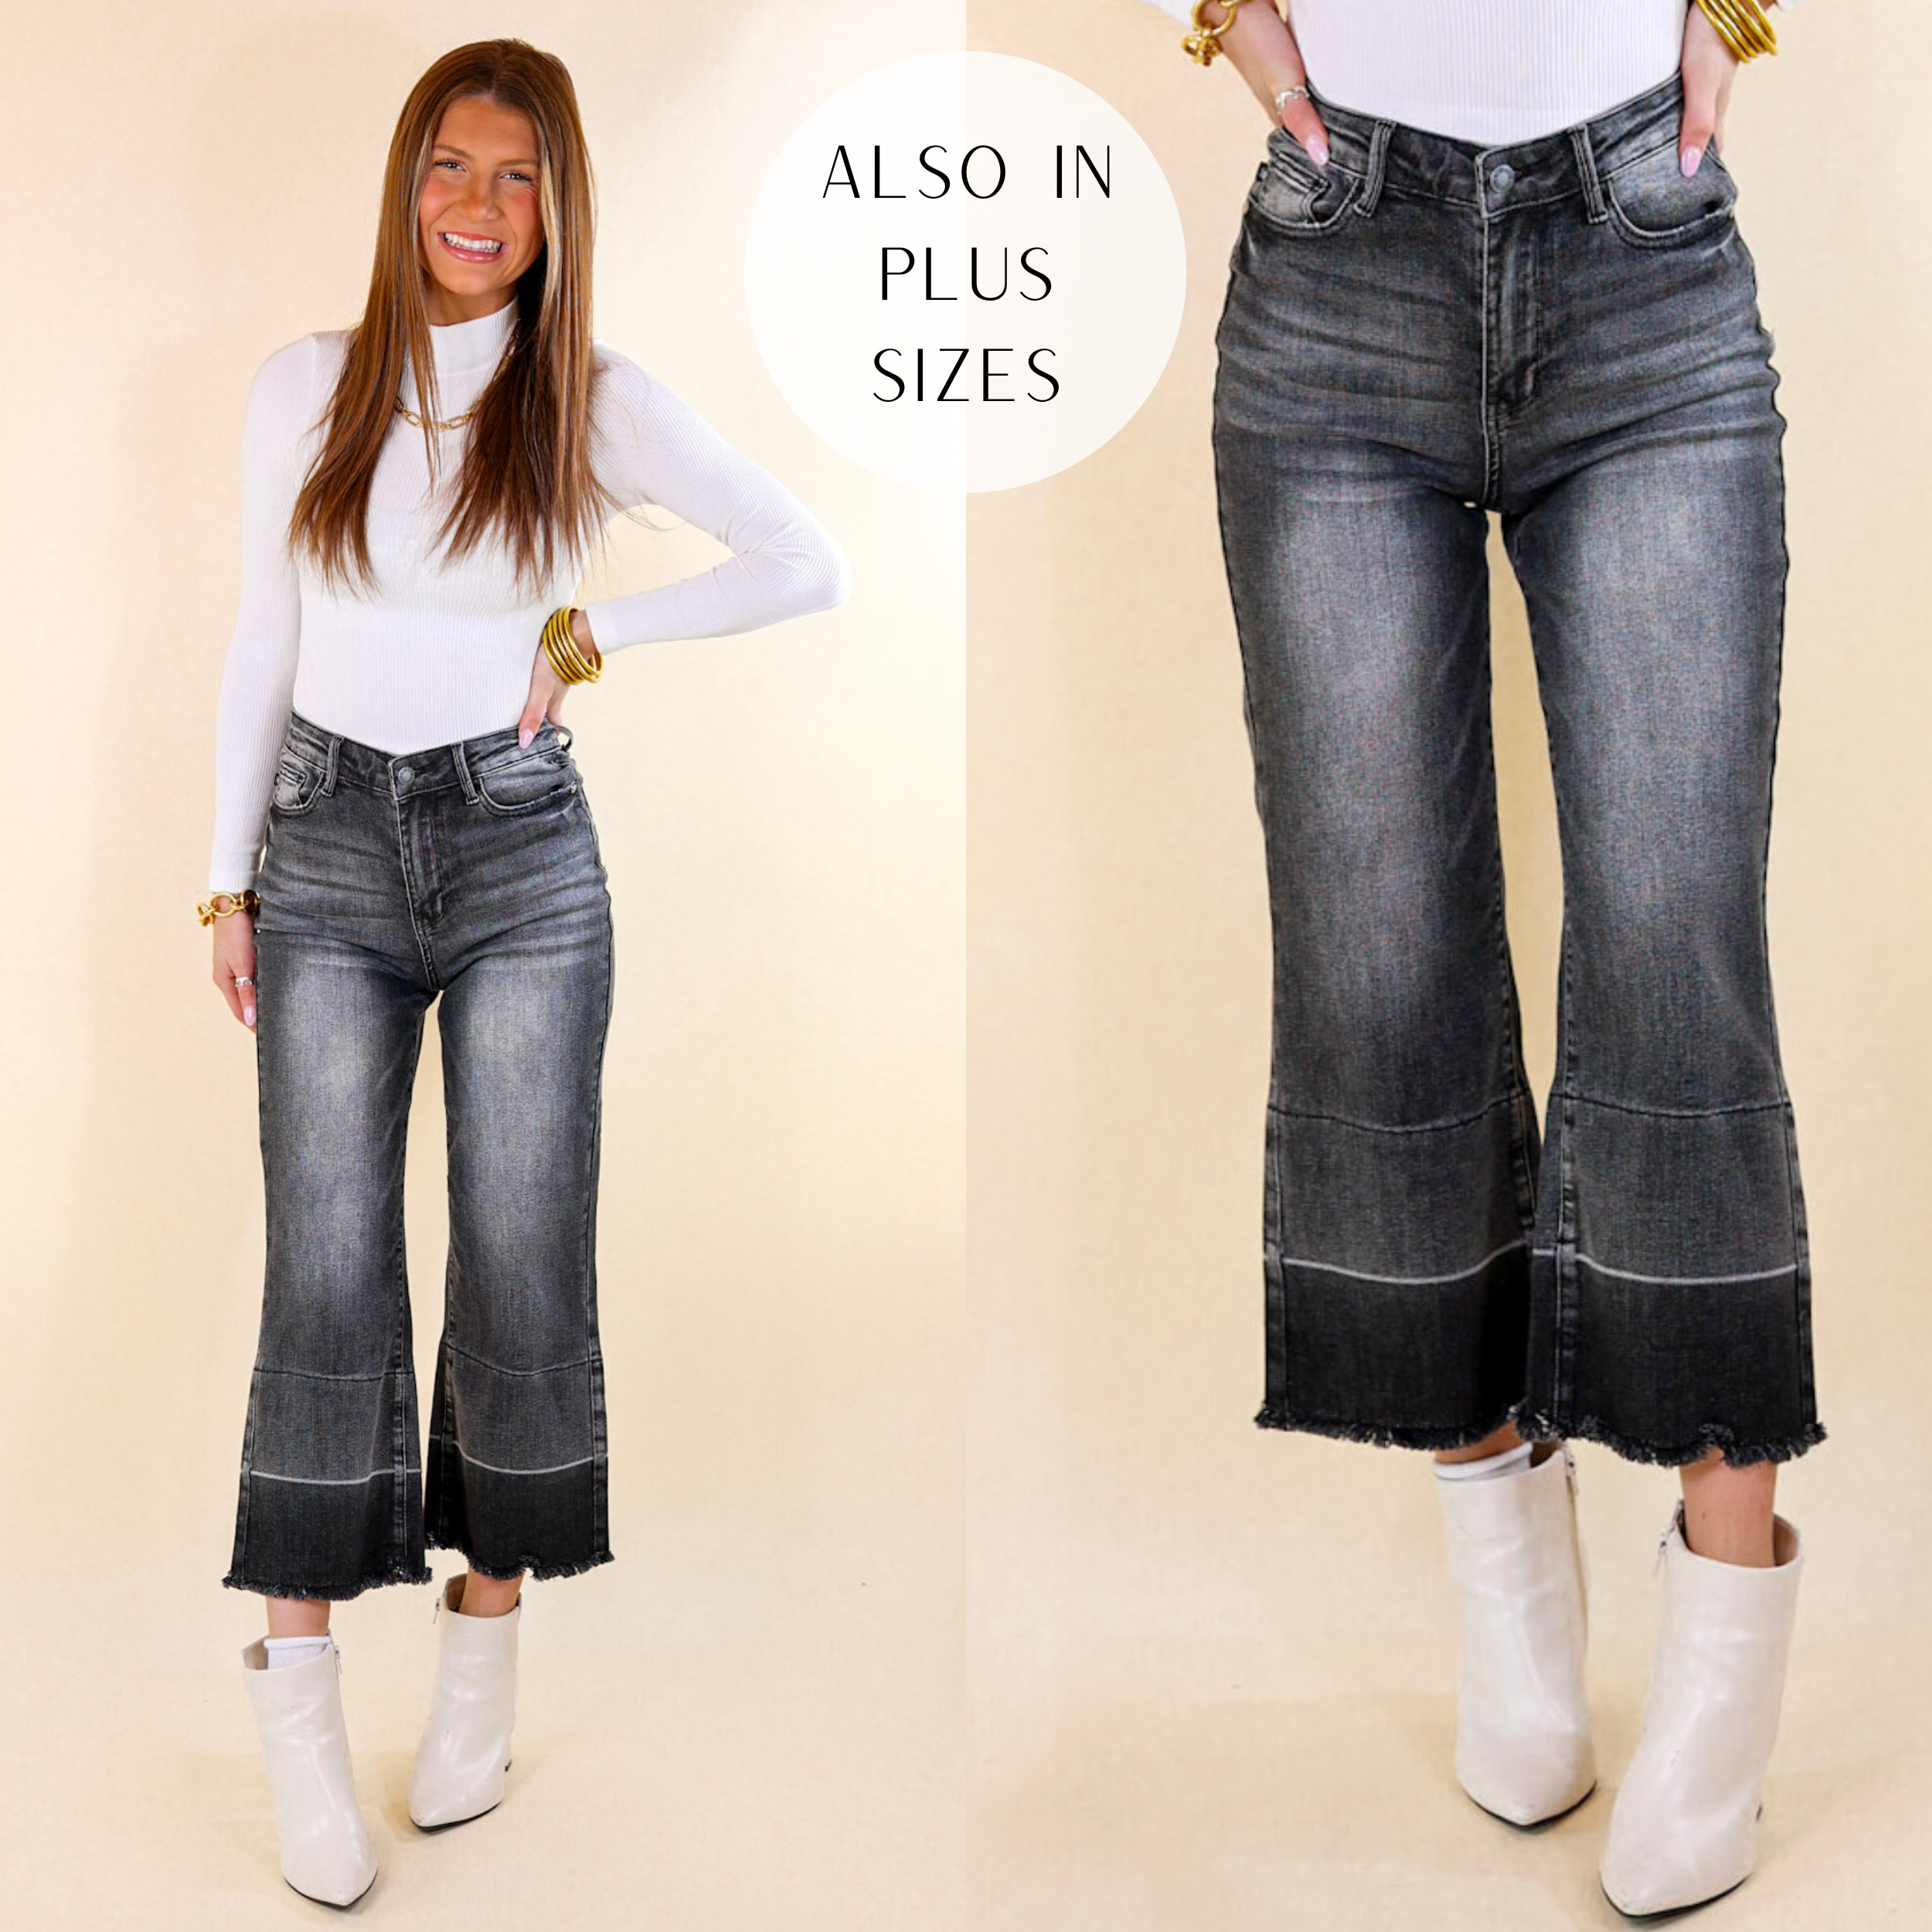 Buy Aarika Girls Blue Color Denim Jeans Online at Best Prices in India -  JioMart.